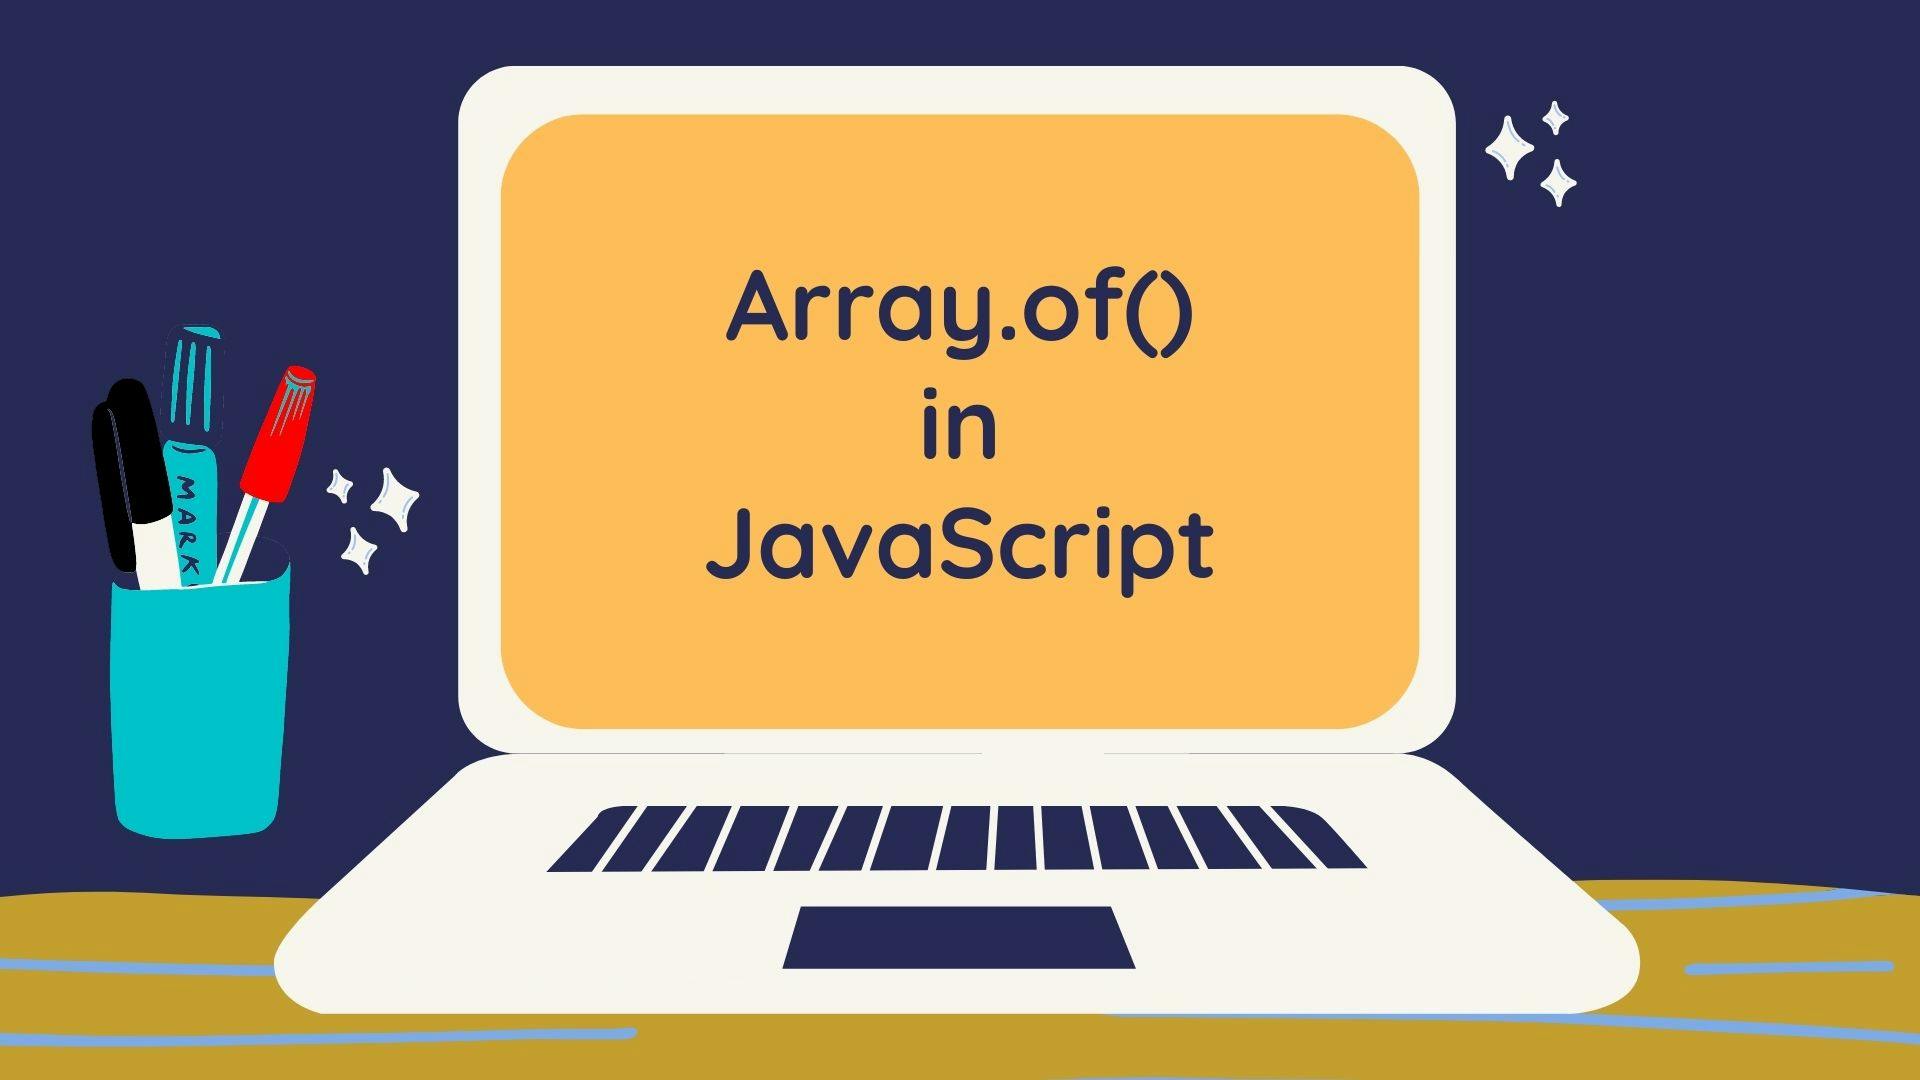 Javascript array.of() method